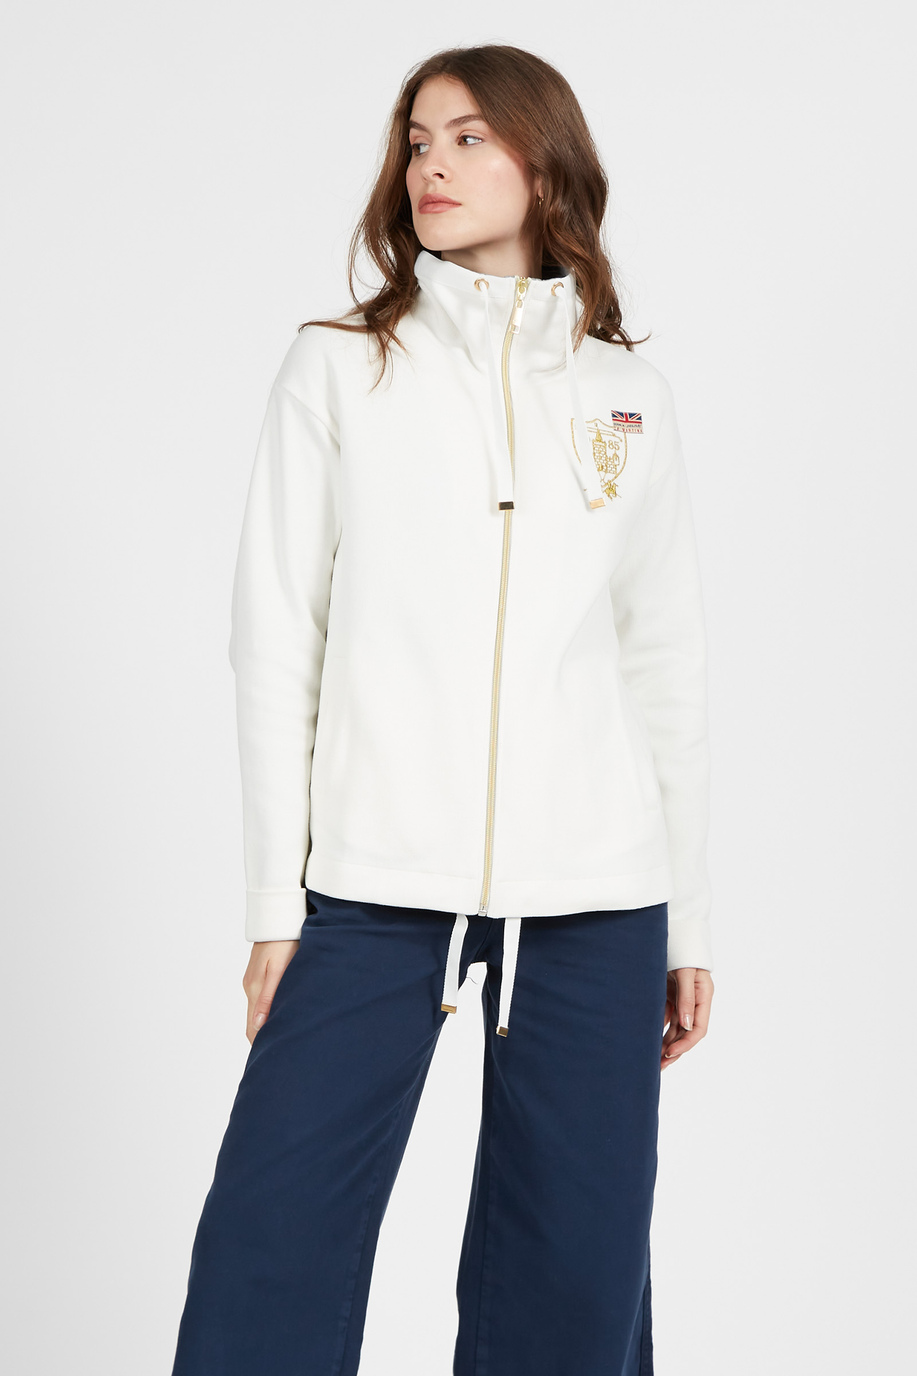 Damen Baumwollsweat mit Stehkragen und Zip regular fit Front - Sportlich-schicke Kleidung | La Martina - Official Online Shop